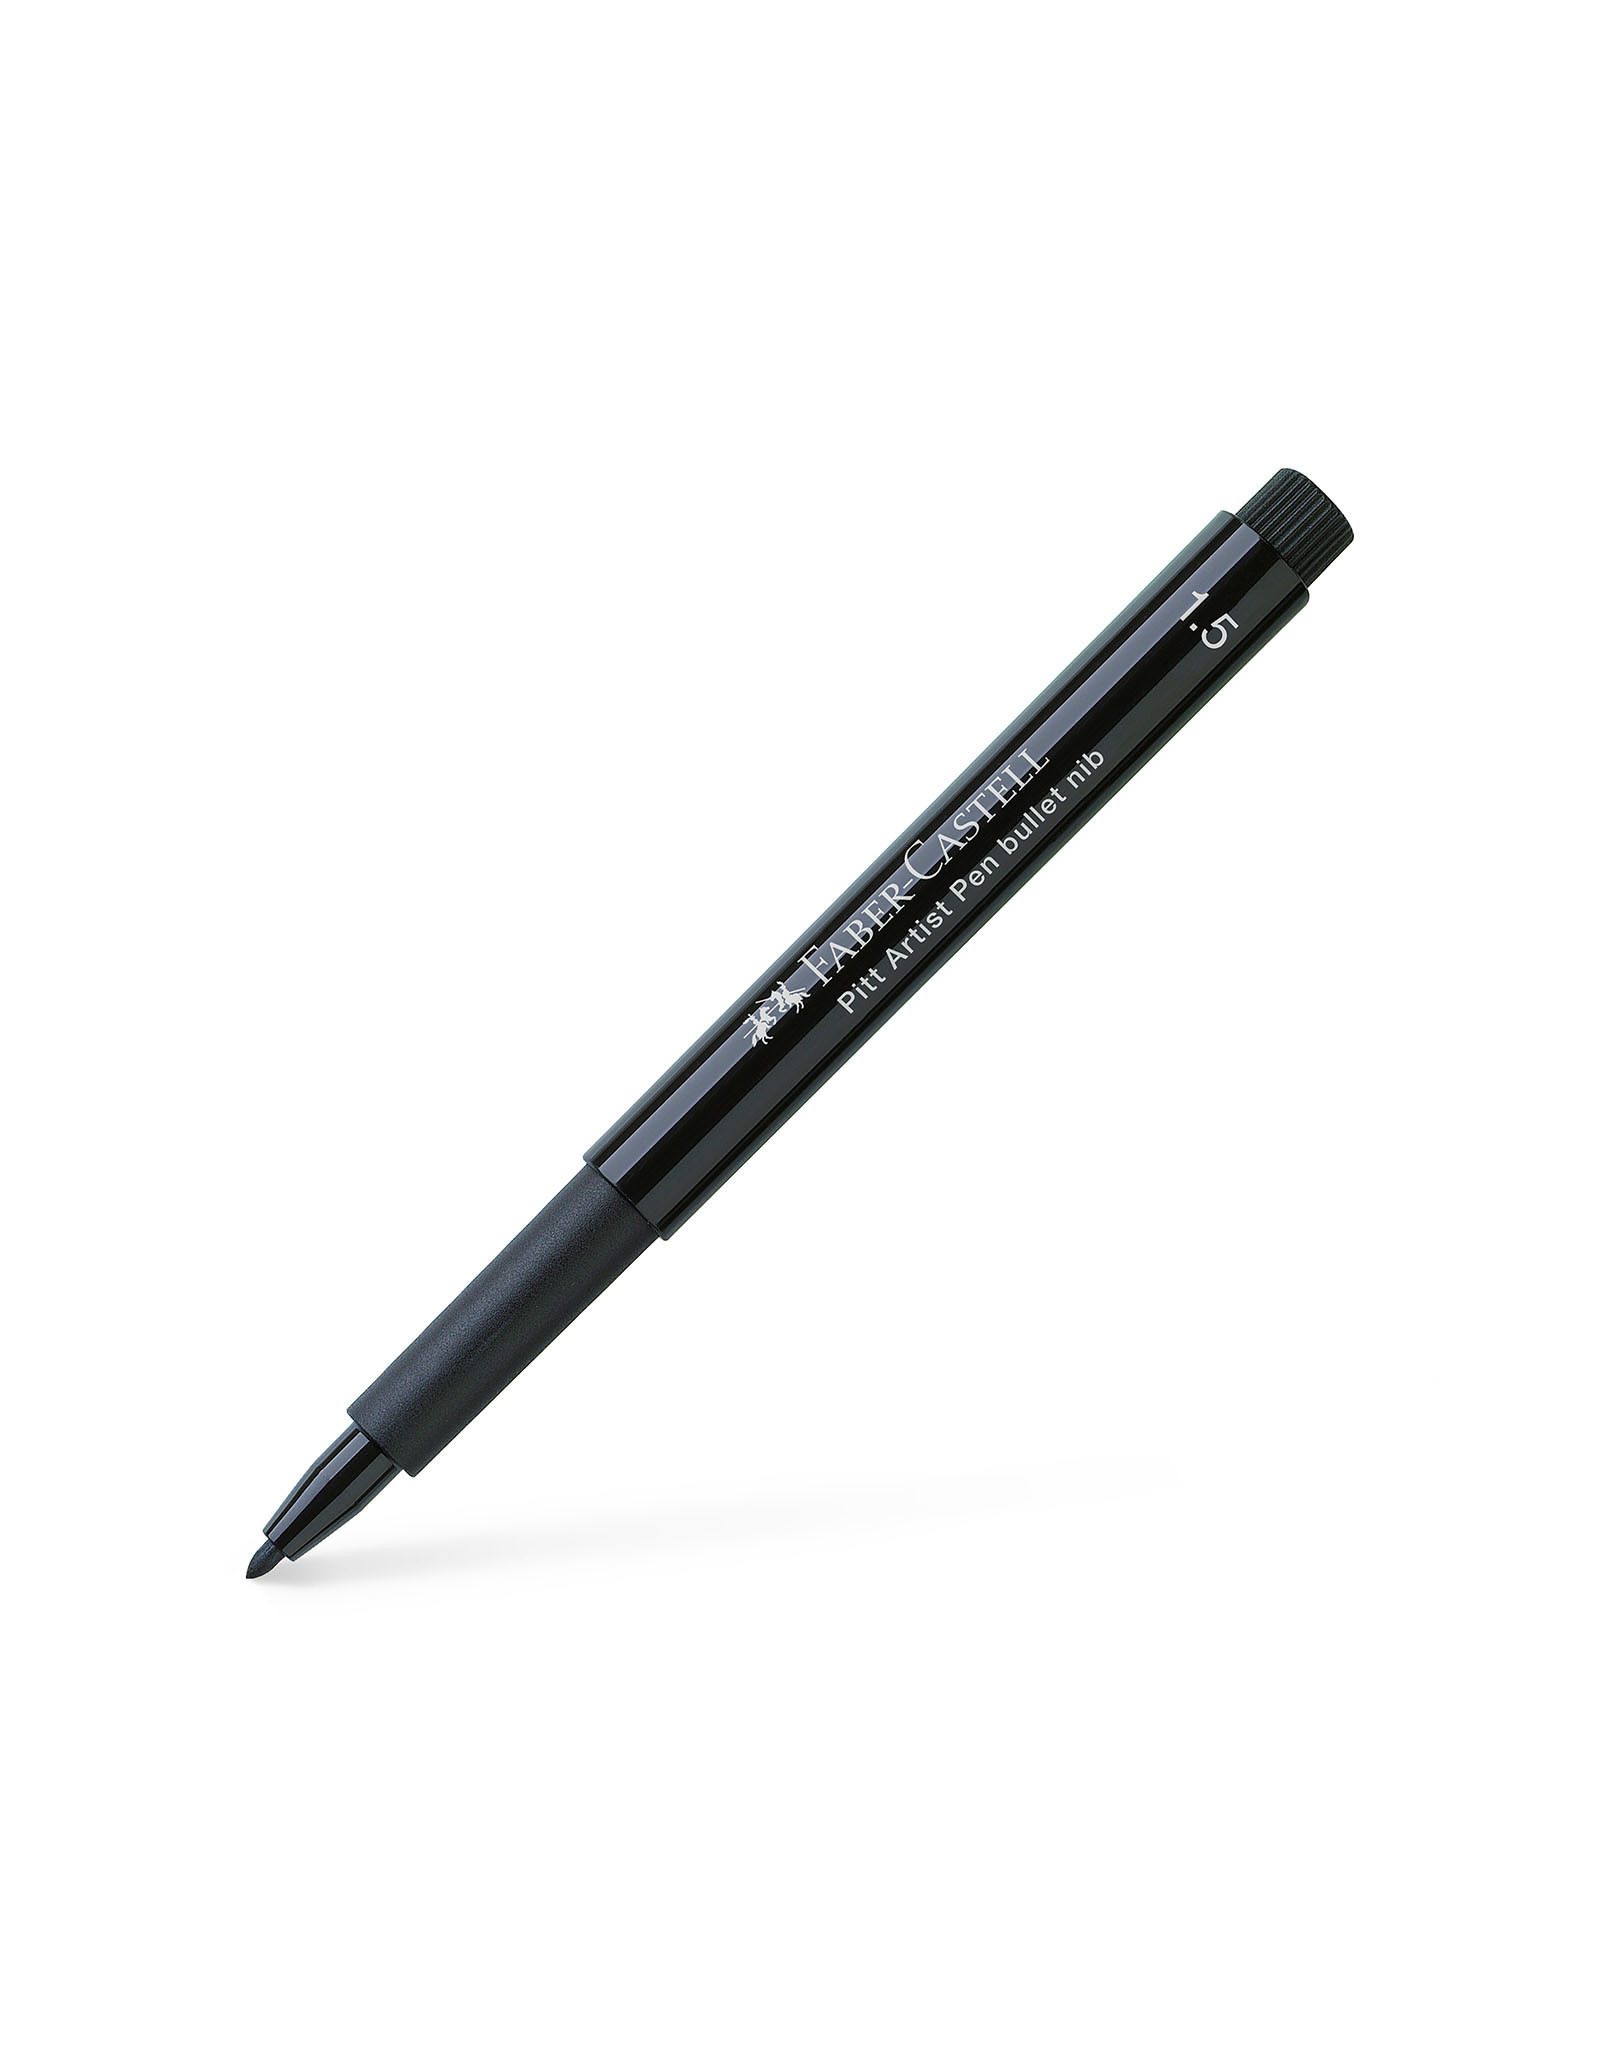 FABER-CASTELL Pitt Artist Pen, Bullet, Black